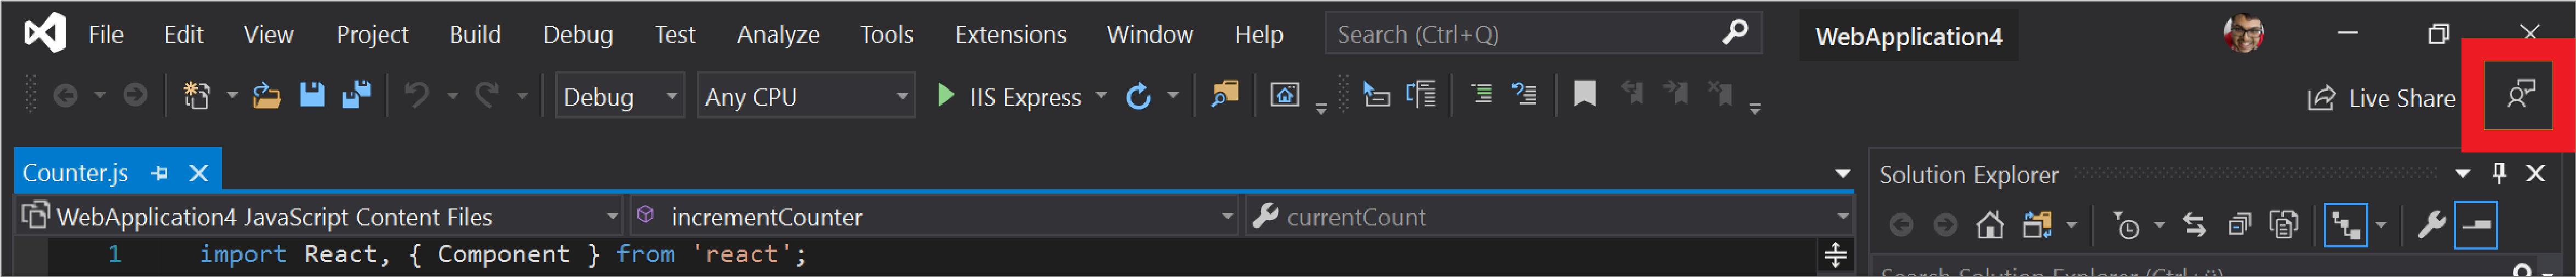 Icono Enviar comentarios en Visual Studio